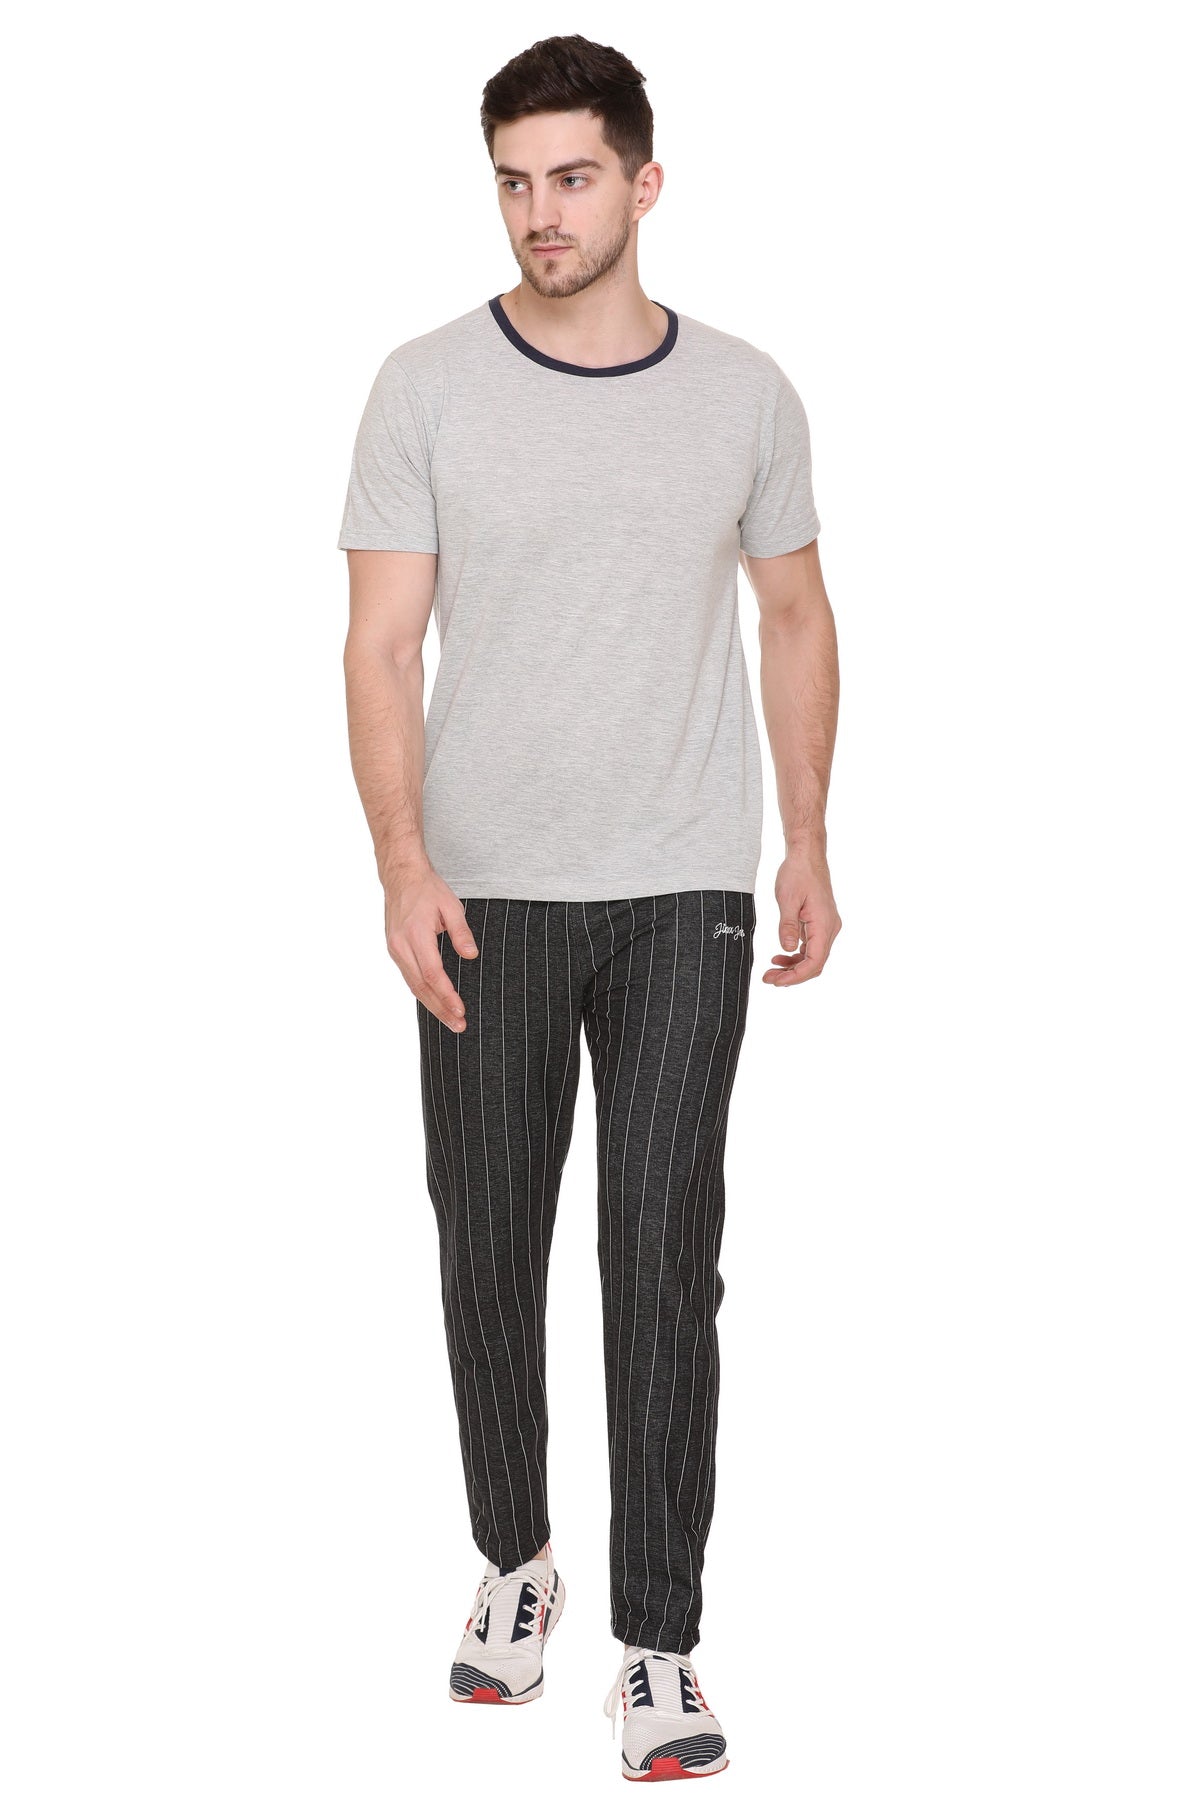 Buy Plus Size Checked Pajama Pants  Cotton Mens Pyjamas  Apella